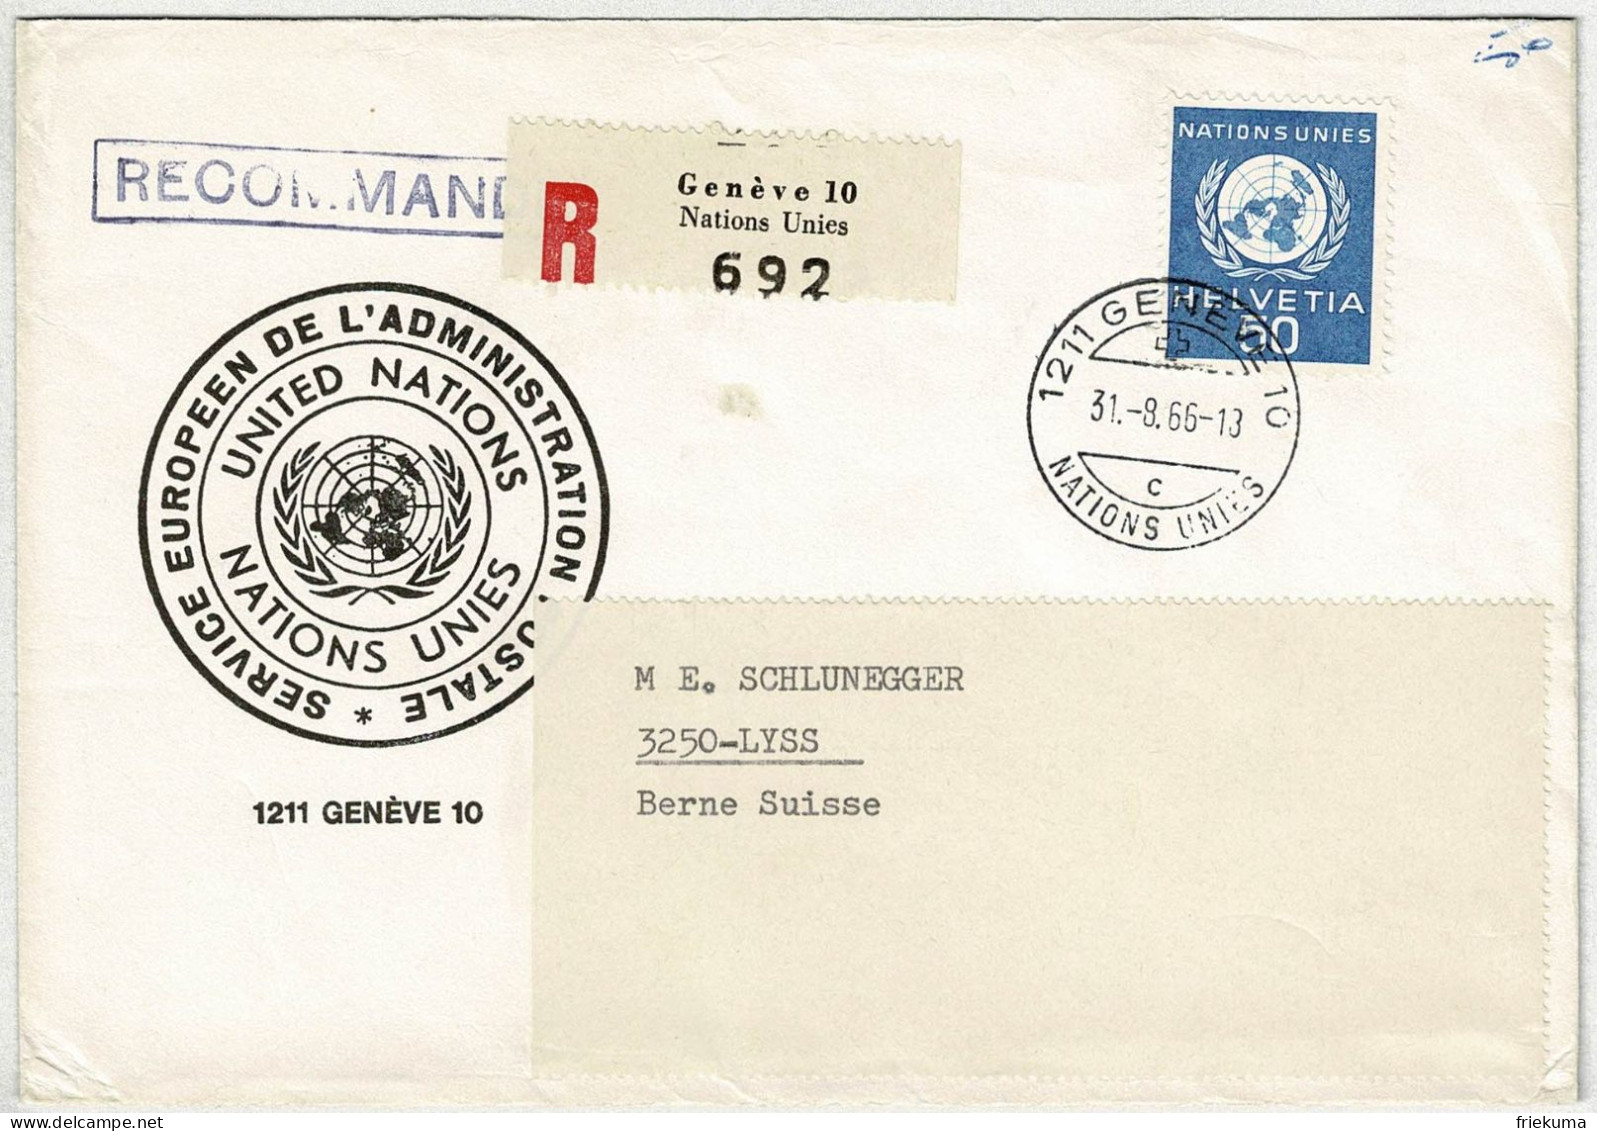 Schweiz 1966, Brief Einschreiben Genève - Lyss, Dienstmarke Nations Unies / UNO - Service